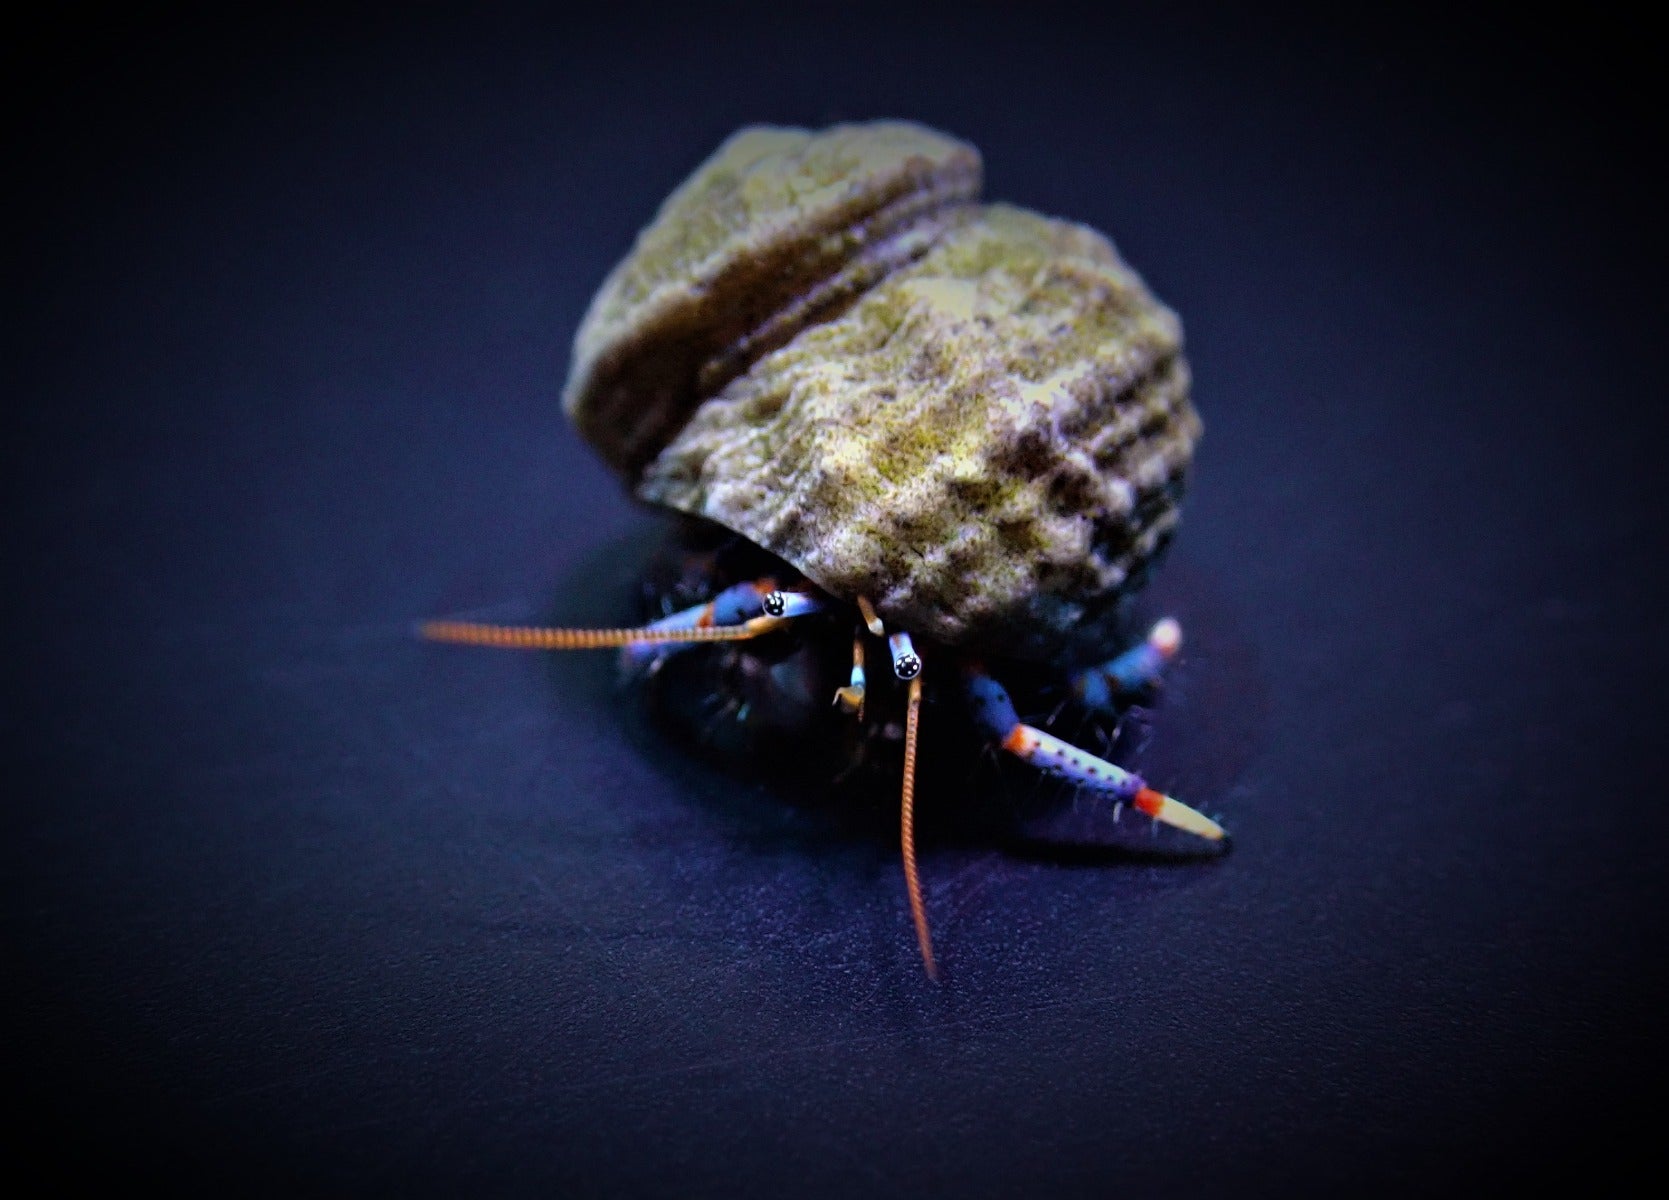 Clibanarius tricolor - Blue-legged hermit crab